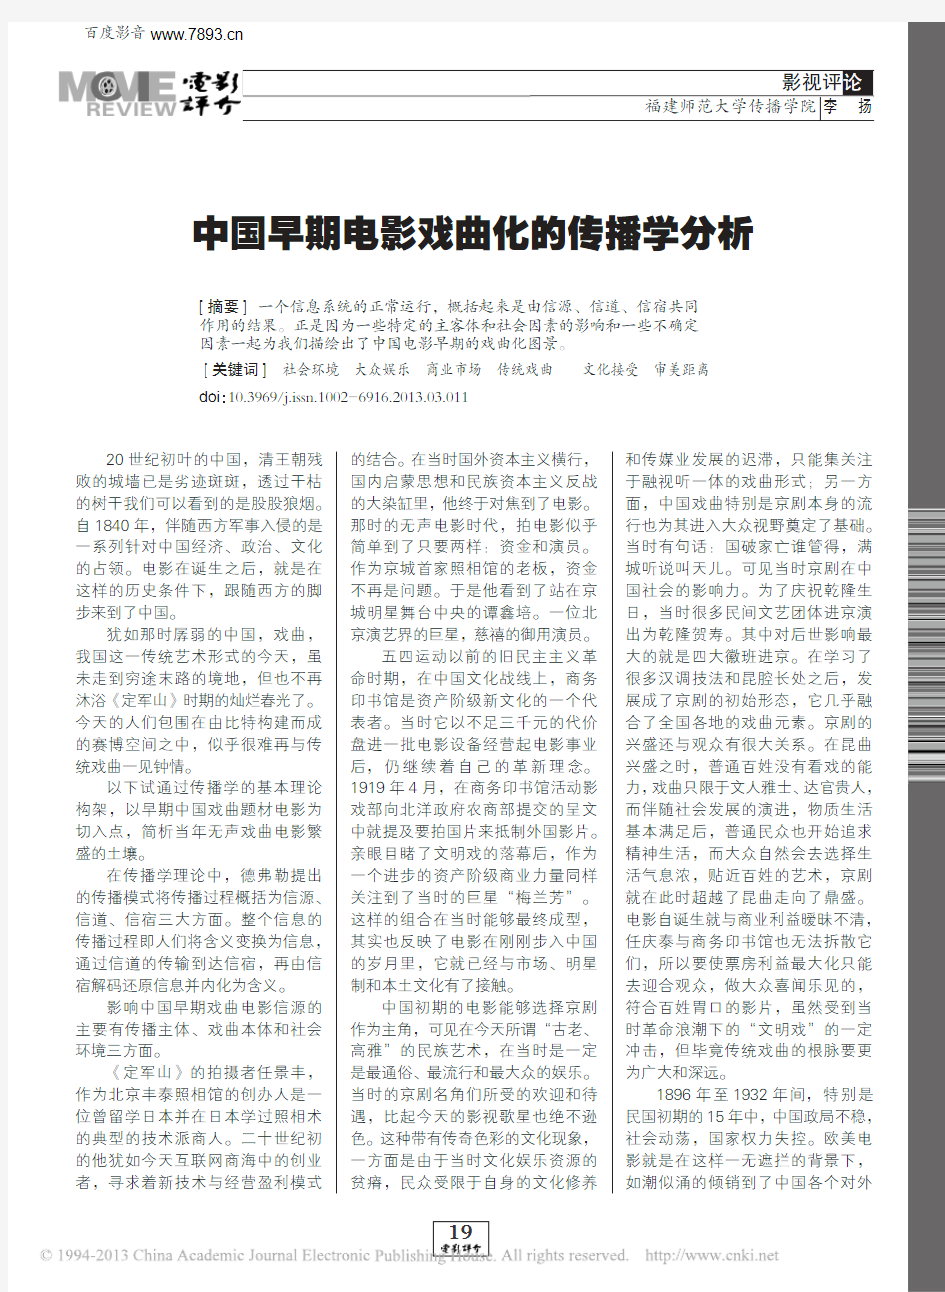 中国早期电影戏曲化的传播学分析_李扬